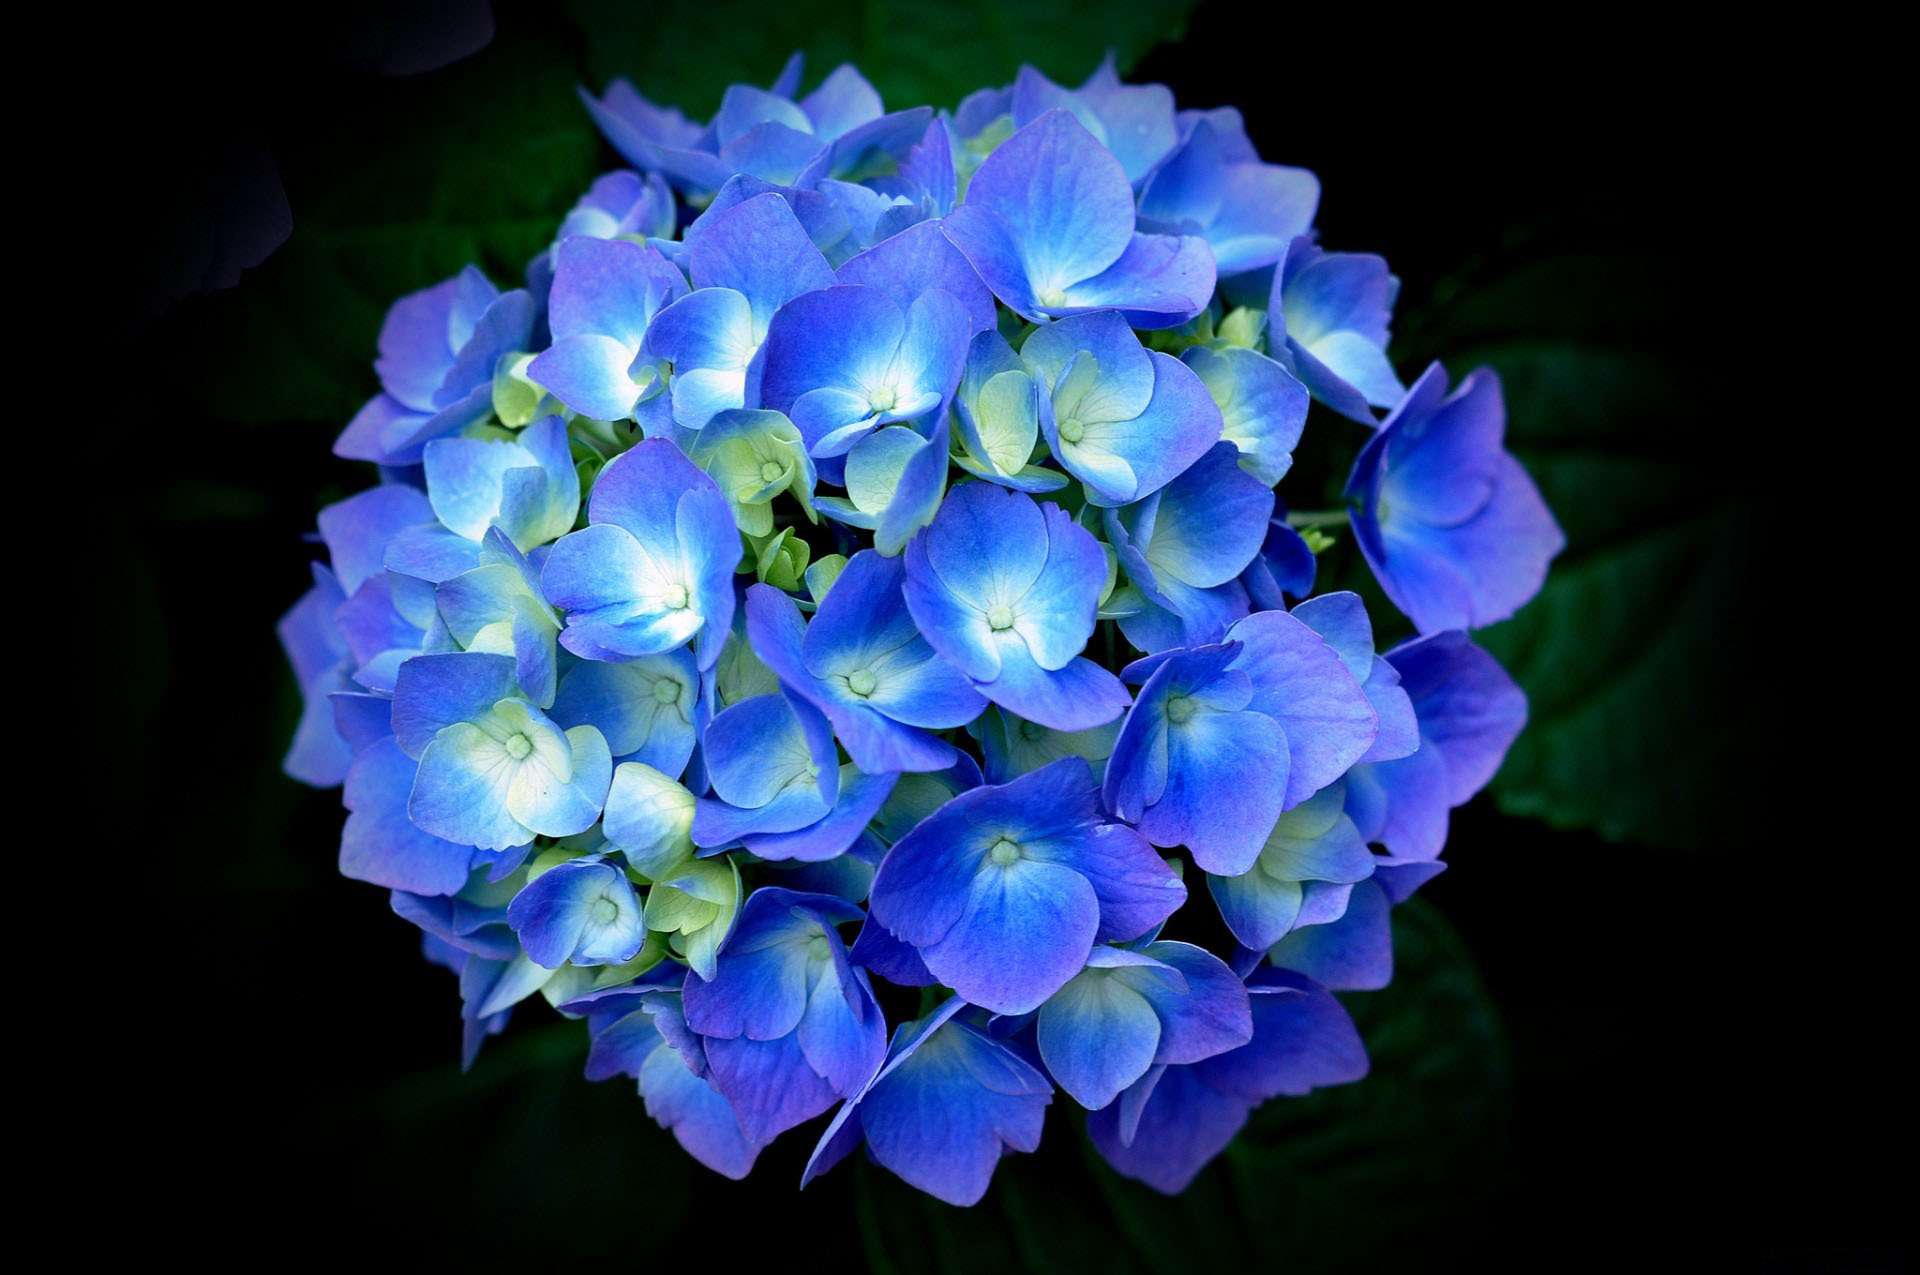 Hoa cẩm tú cầu - một loài hoa tuyệt đẹp với màu sắc đa dạng và bắt mắt. Hãy chiêm ngưỡng hình ảnh của hoa cẩm tú cầu để tận hưởng vẻ đẹp trong từng cánh hoa.